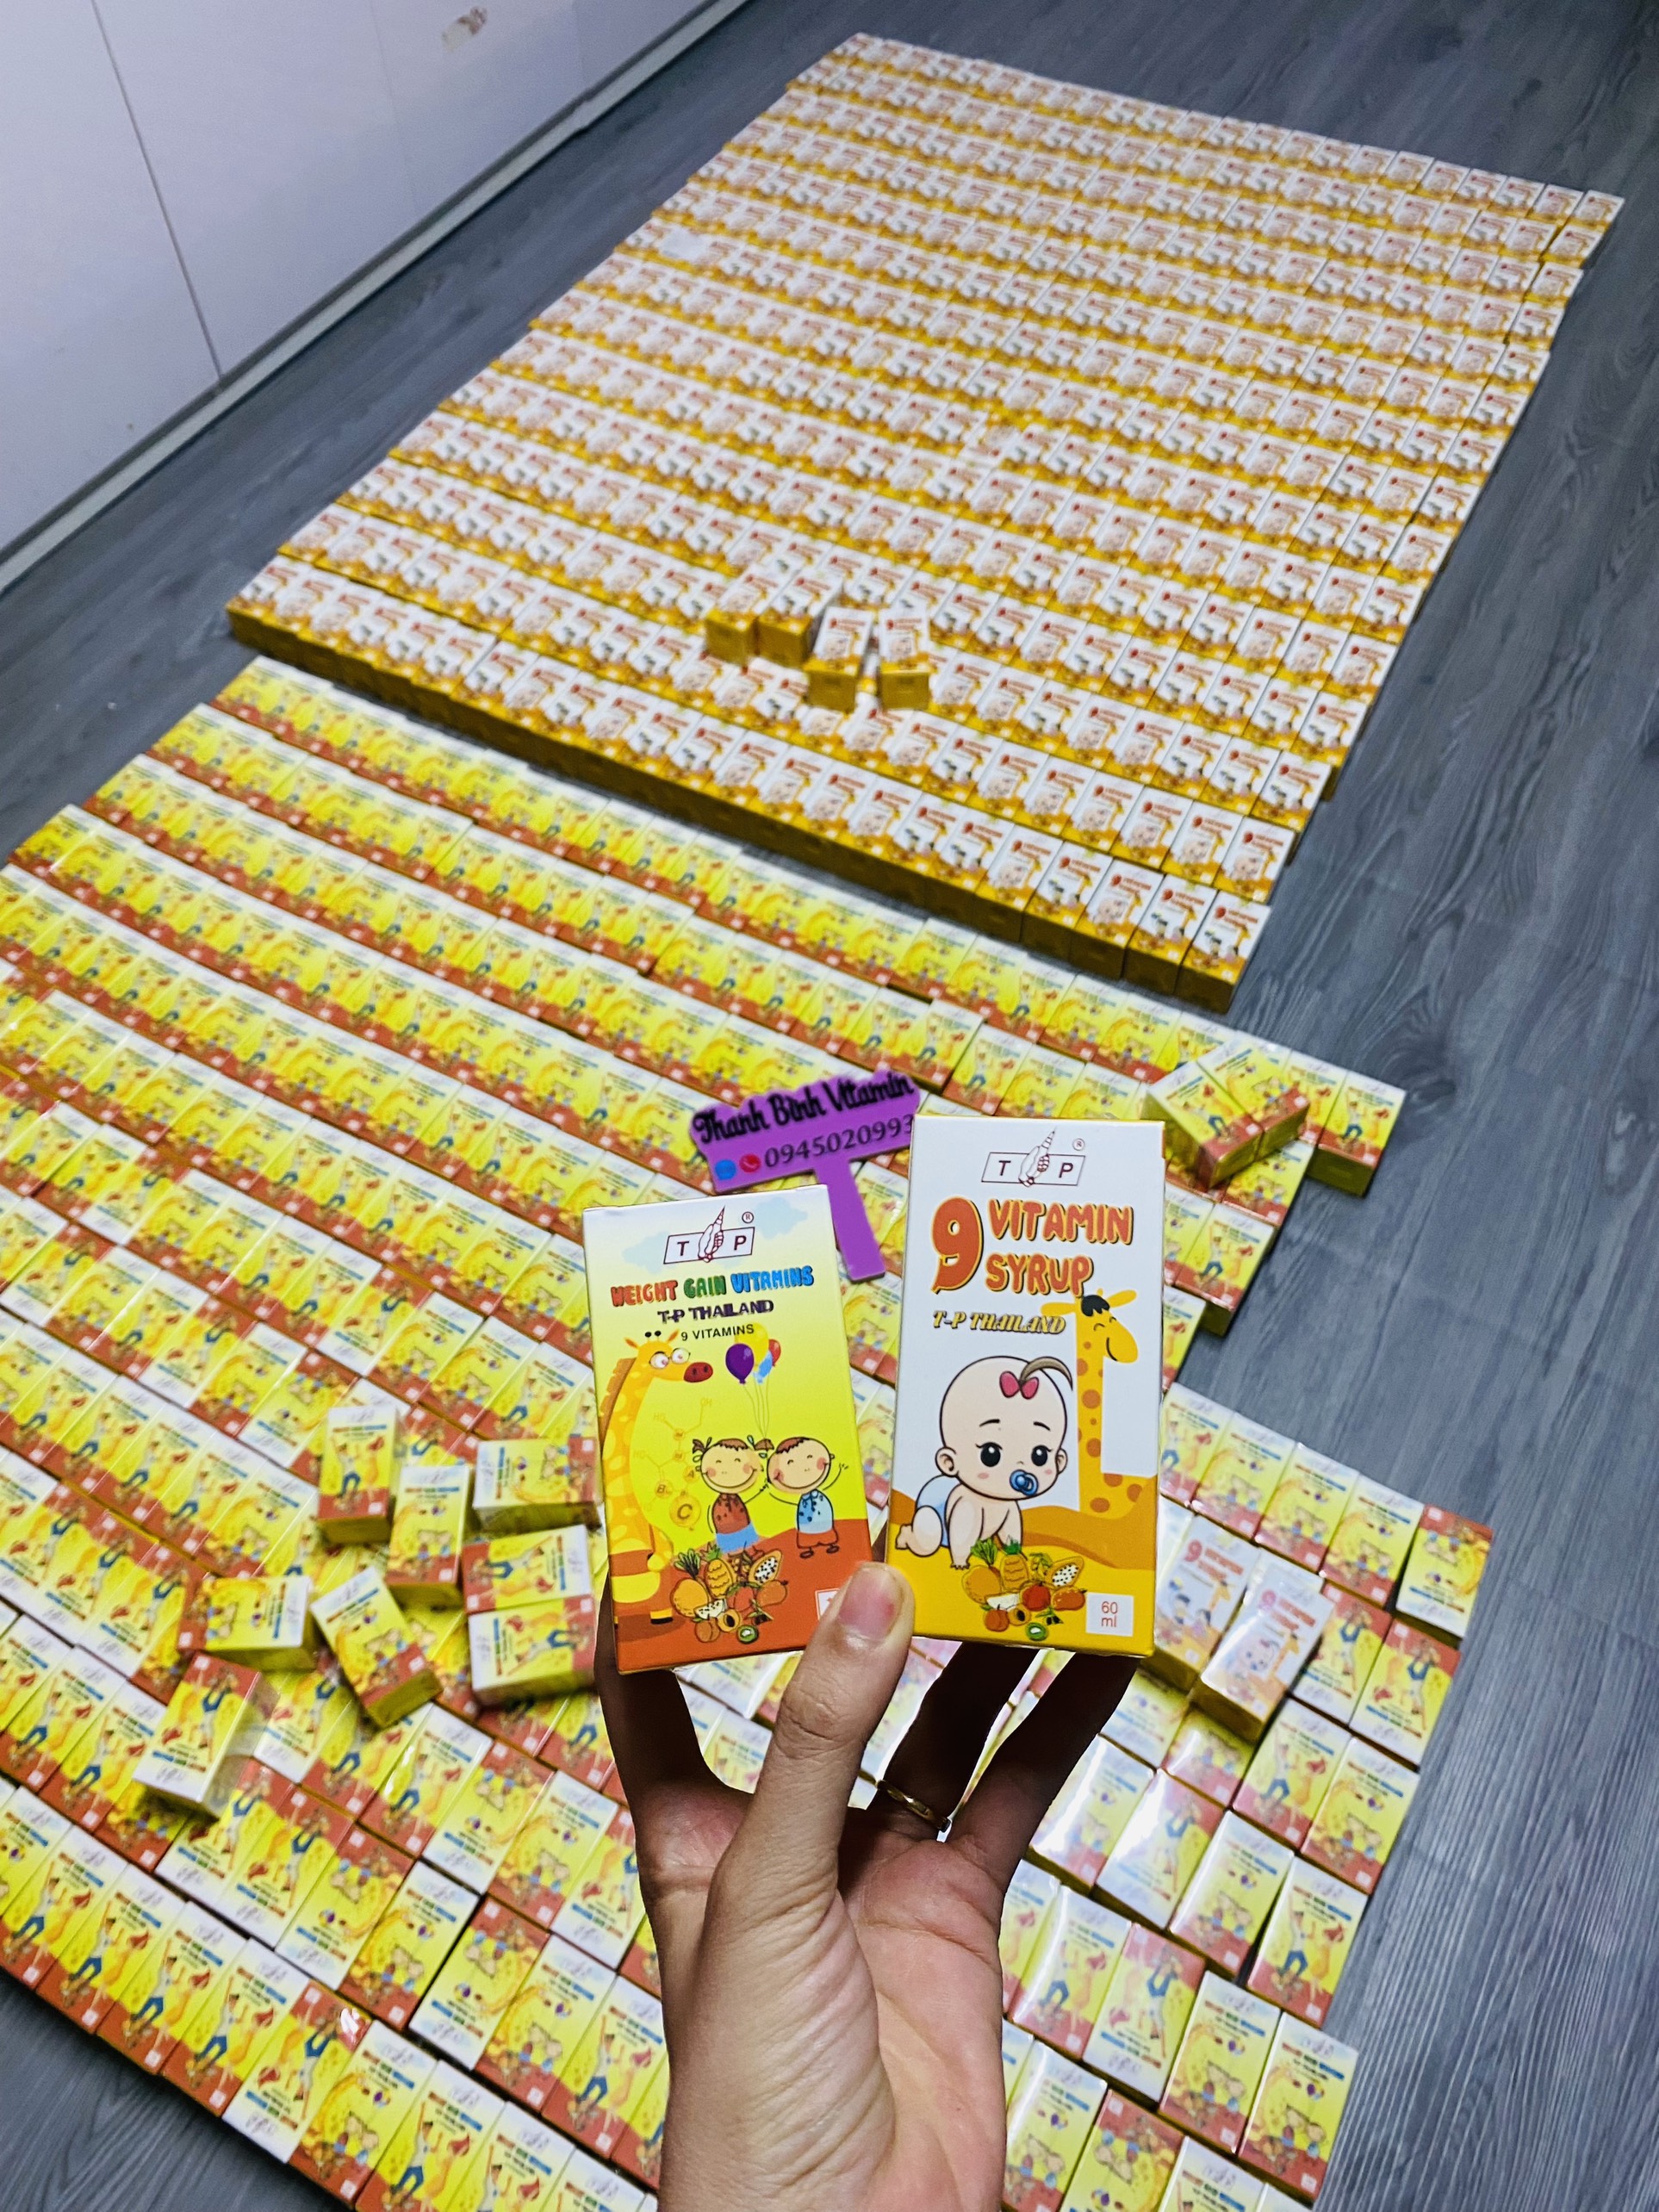 9 Vitamin TP Tăng Cân Thái Lan, Cải Thiện Cân Nặng hộp 100 viên dùng cho người từ 3 tuổi trở lên